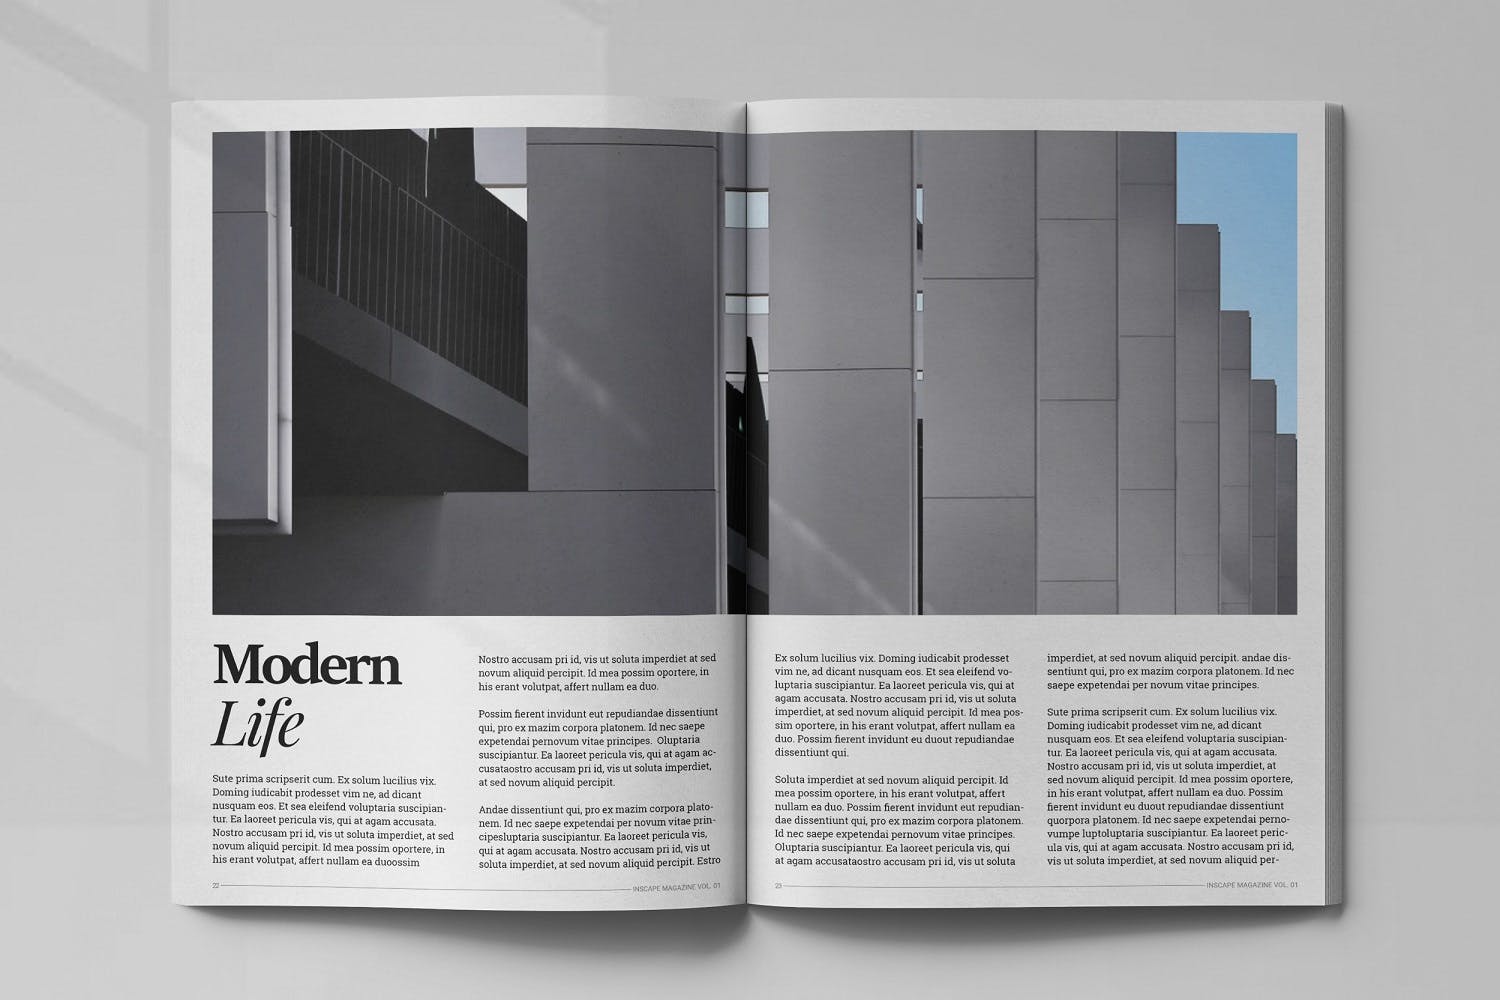 室内设计主题蚂蚁素材精选杂志排版设计模板 Inscape Interior Magazine插图(11)